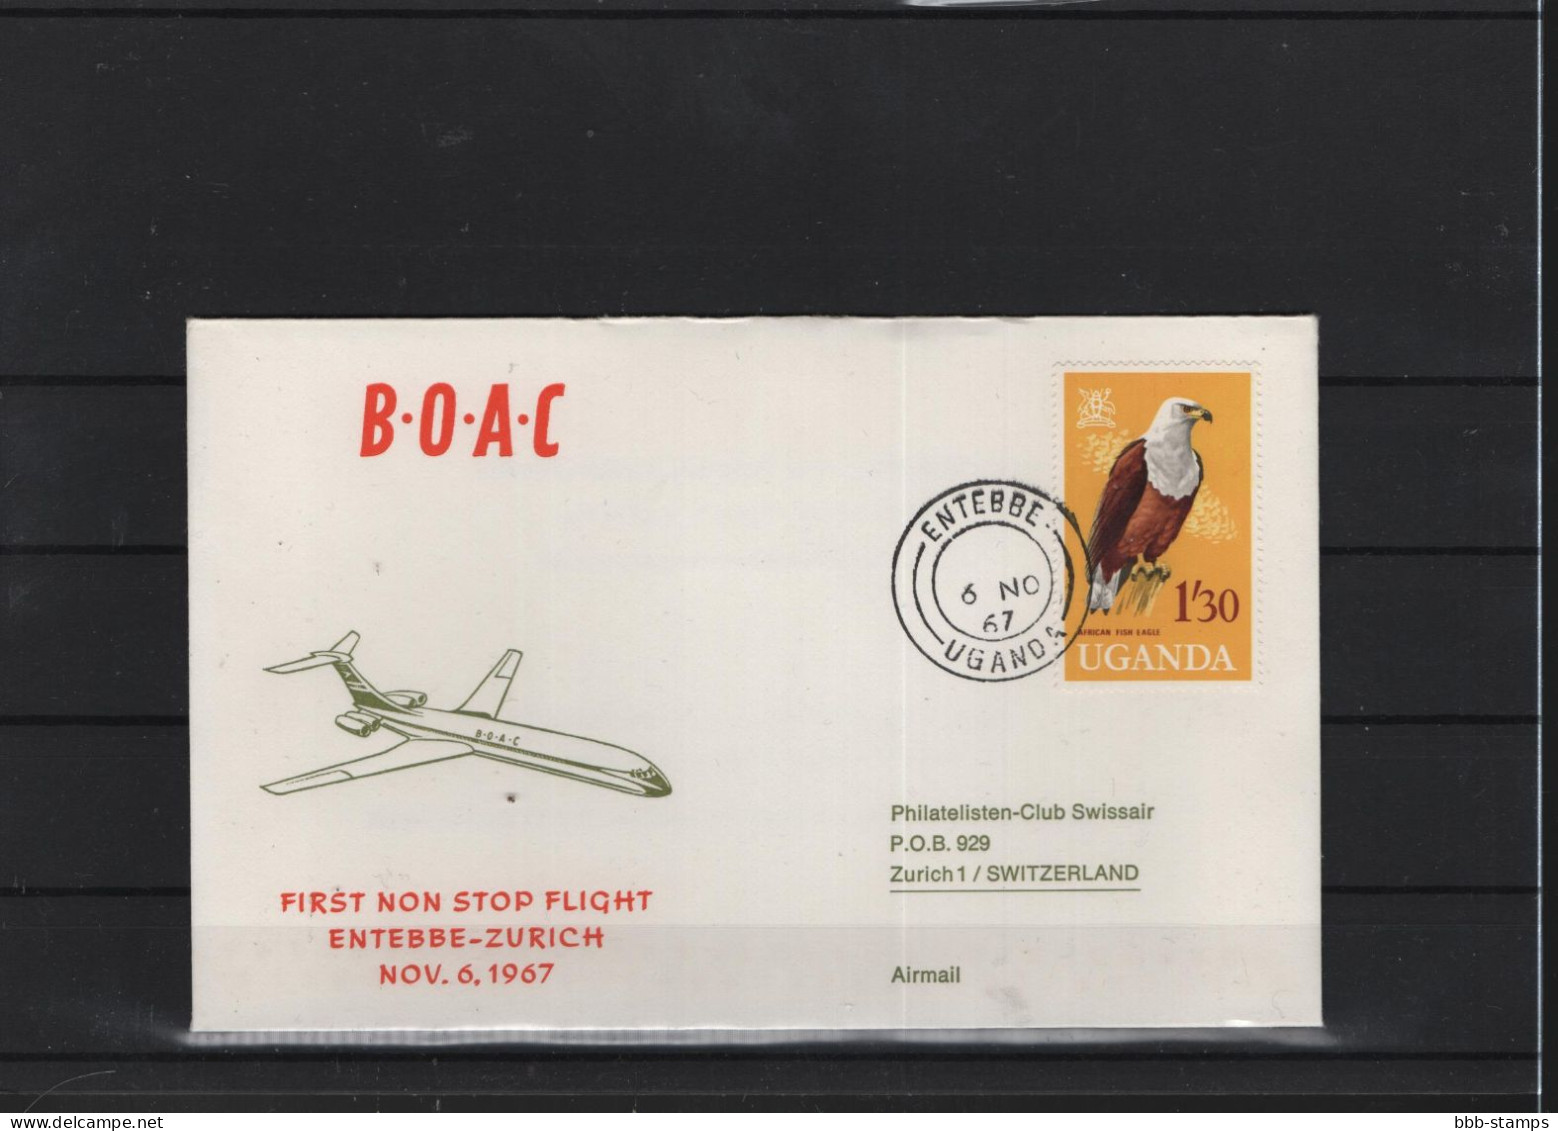 Schweiz Luftpost FFC BOAC 6.11.1966 Entebbe - Zürich - Primi Voli